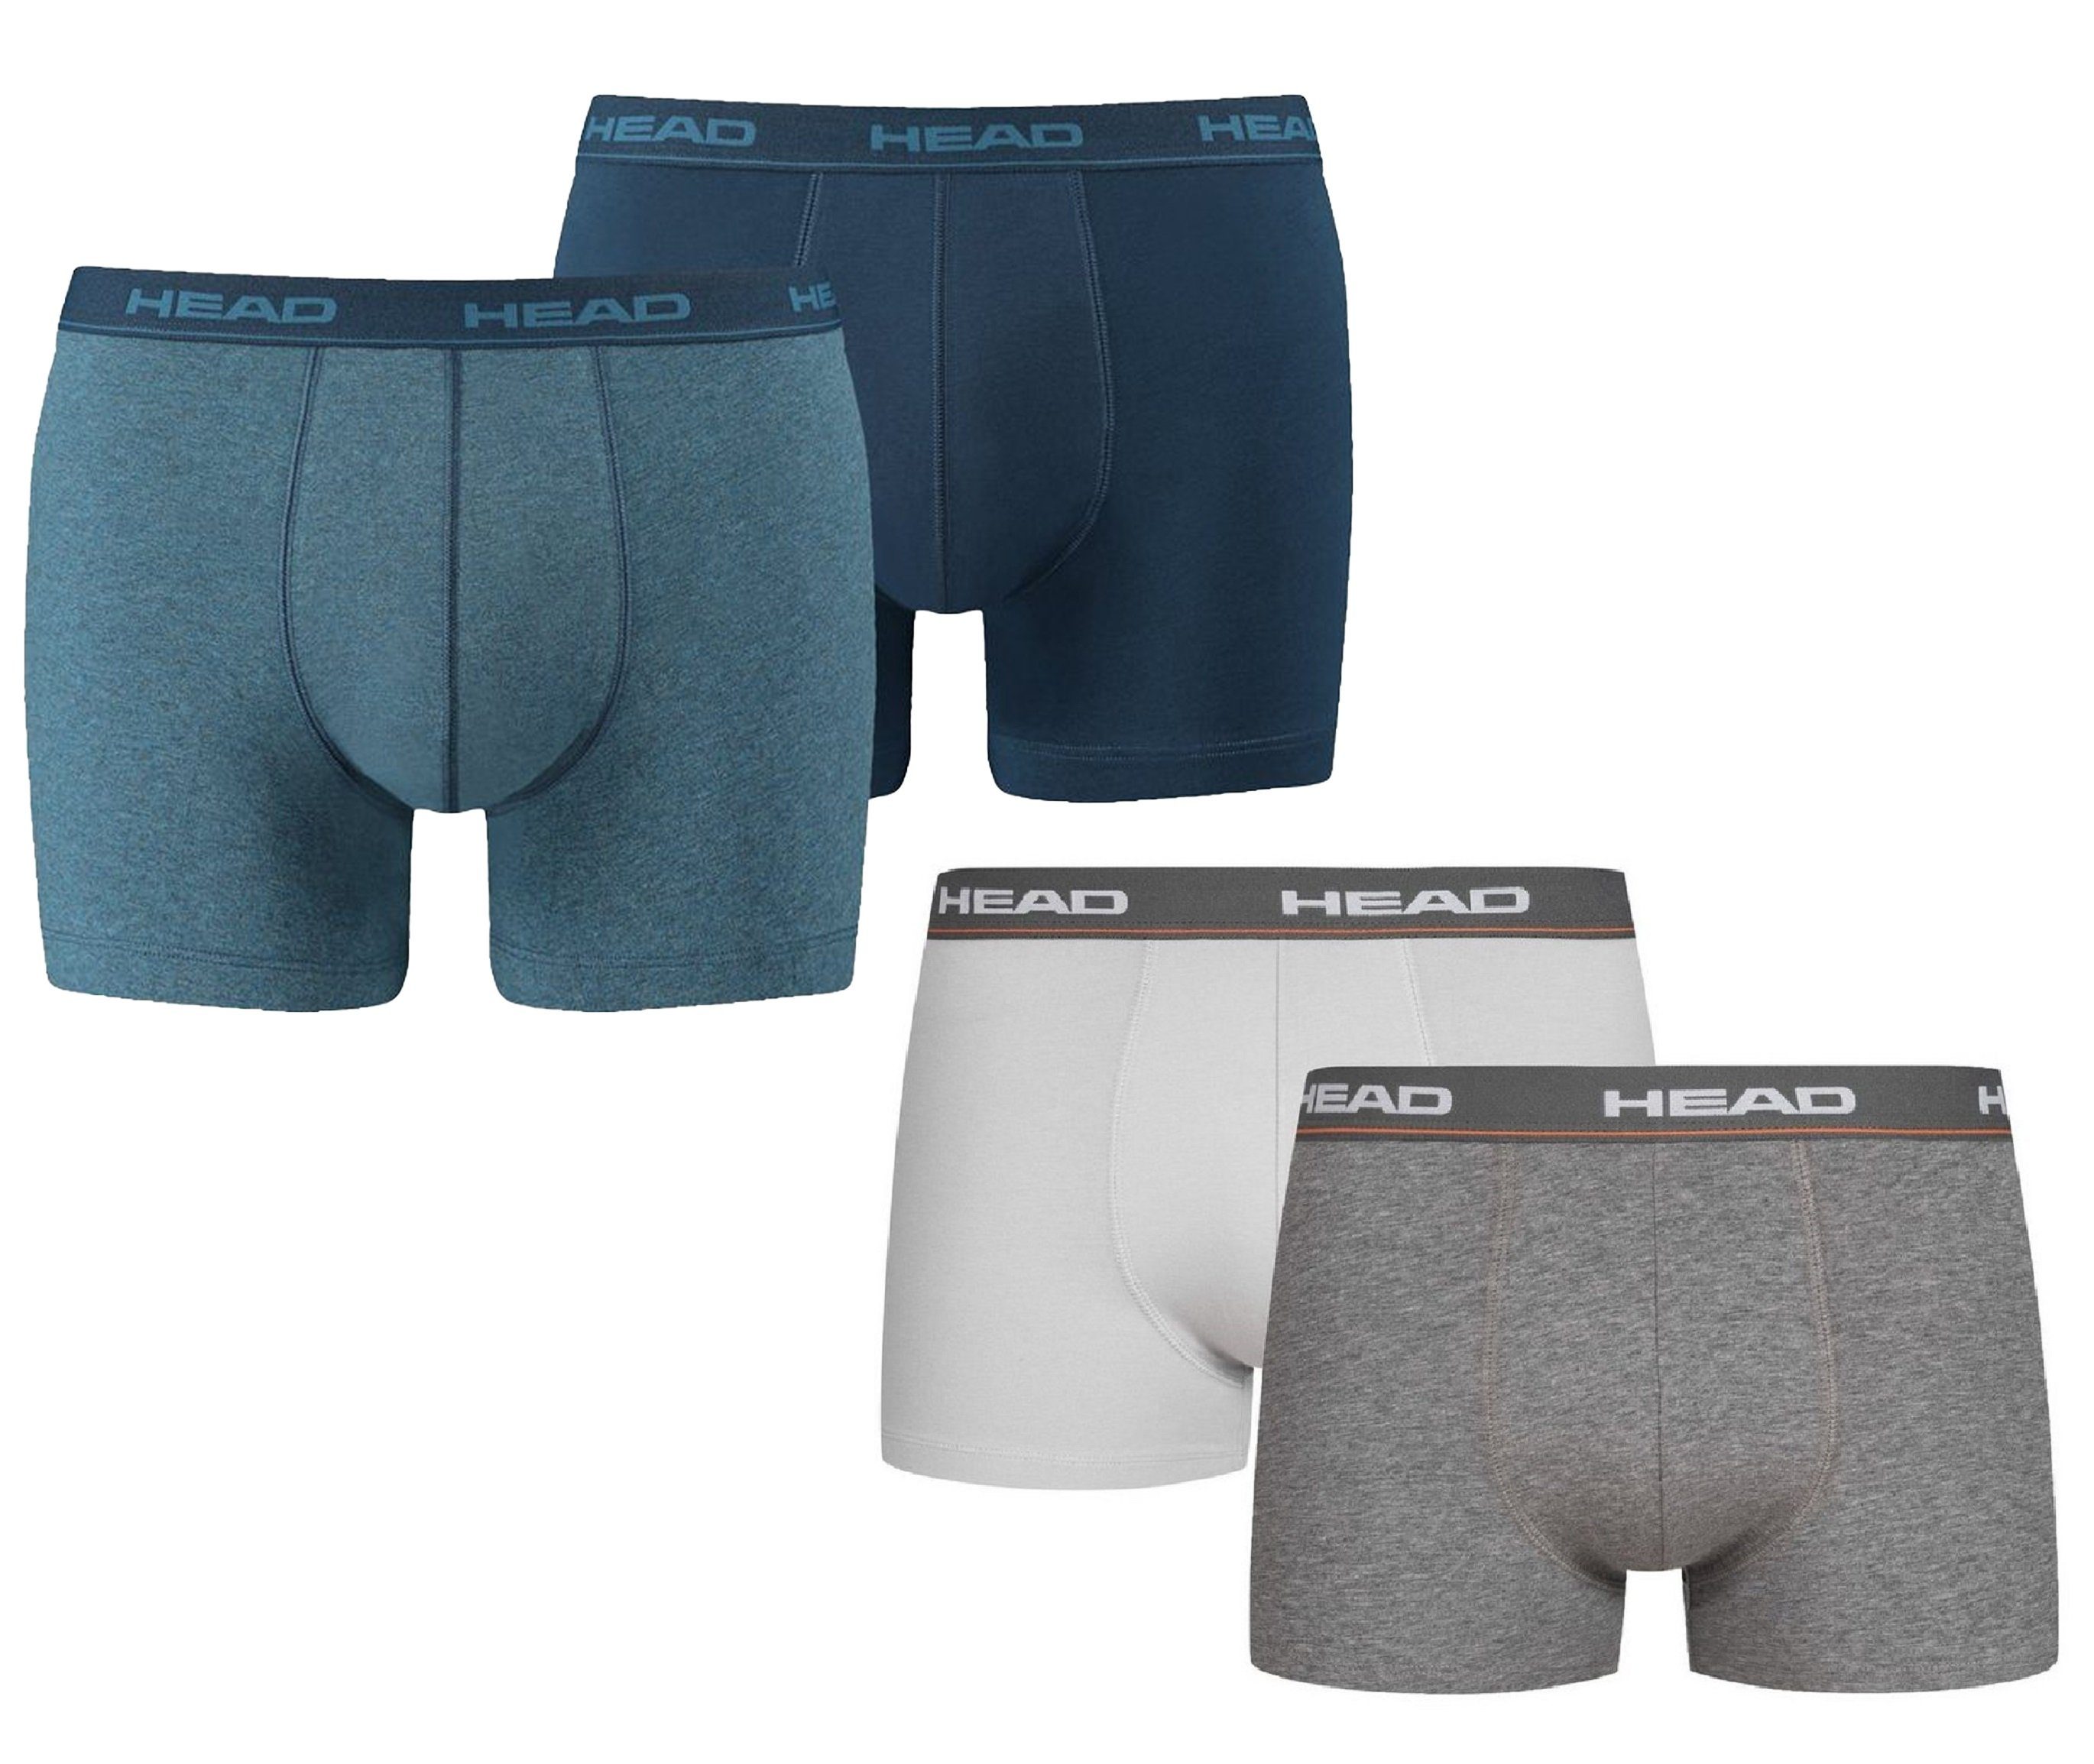 Head Boxershorts Basic Boxer Hüft-Shorts Unterhose Outdoorsport (Set, 2er-Pack) mit Logo auf dem Elastikbund